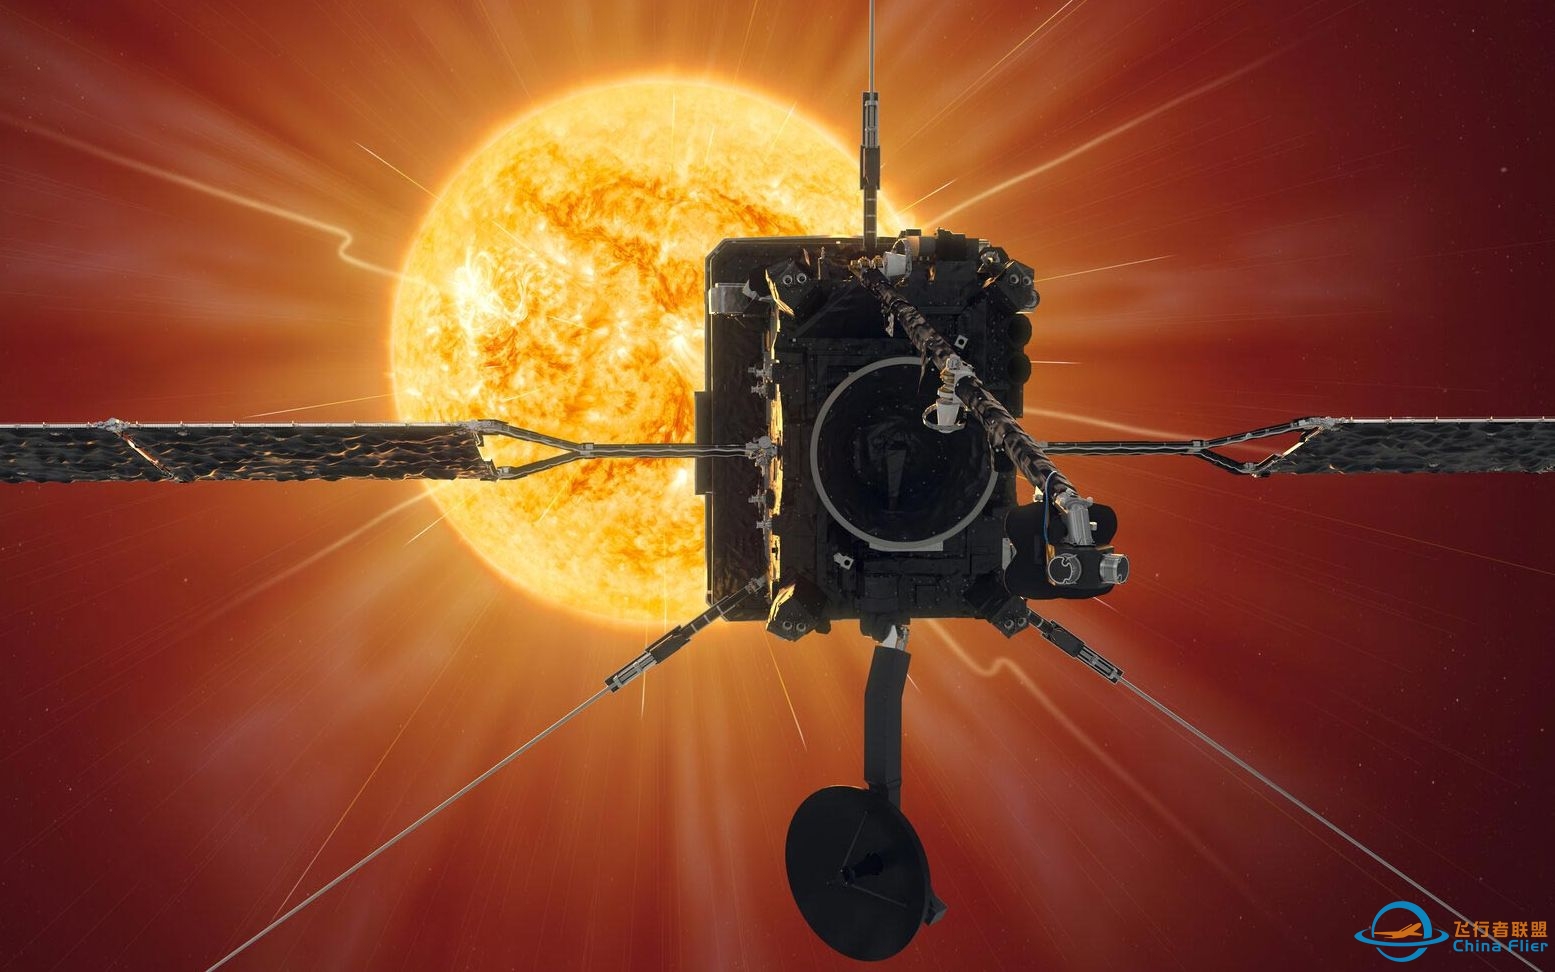 太阳轨道载具（Solar Orbiter）公布首幅观测图像-2172 